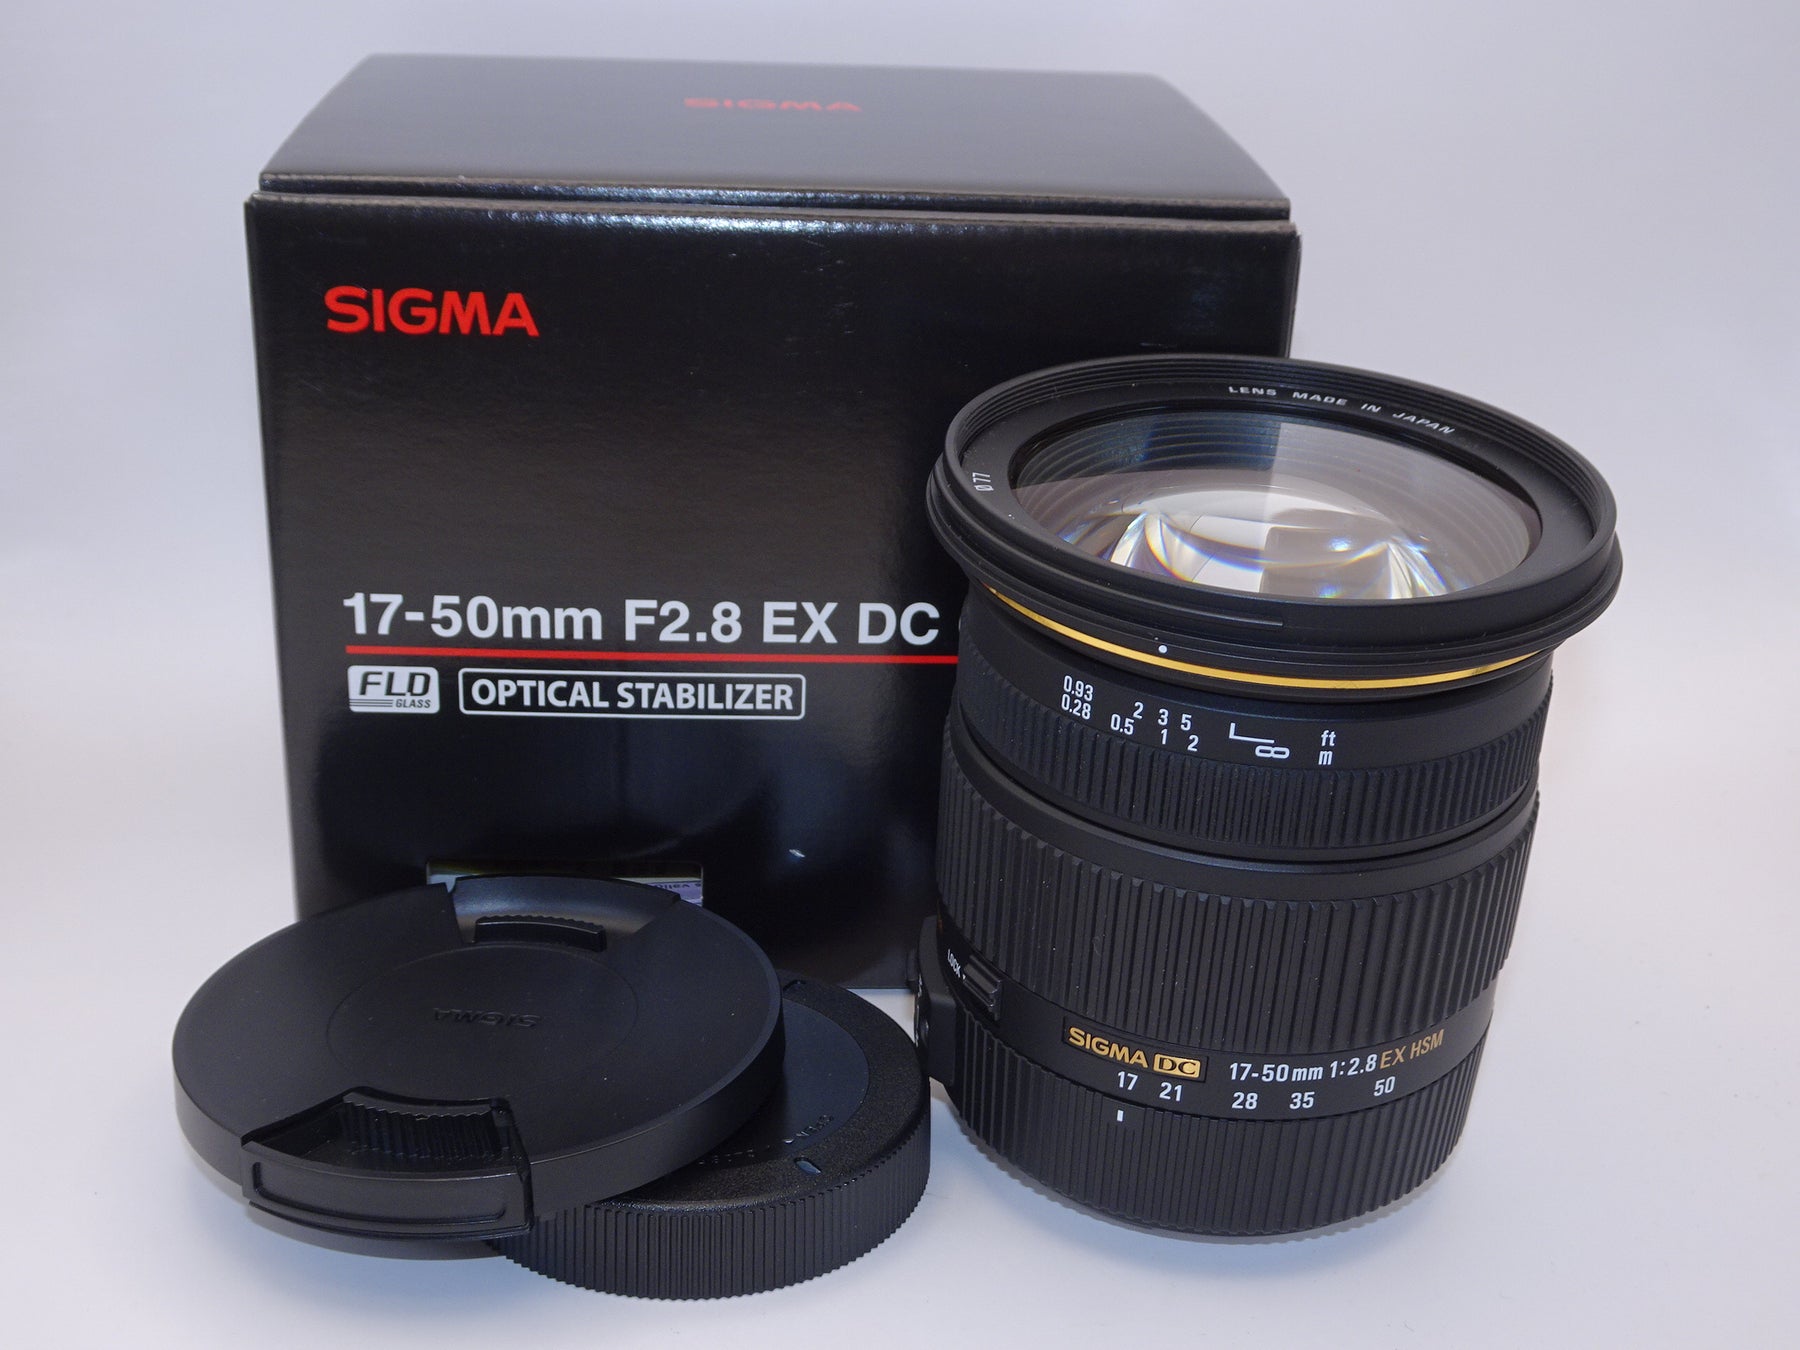 SIGMA ZOOM LENS 17-50mm 1:2.8 EX HSM シグマズームレンズ ケース 